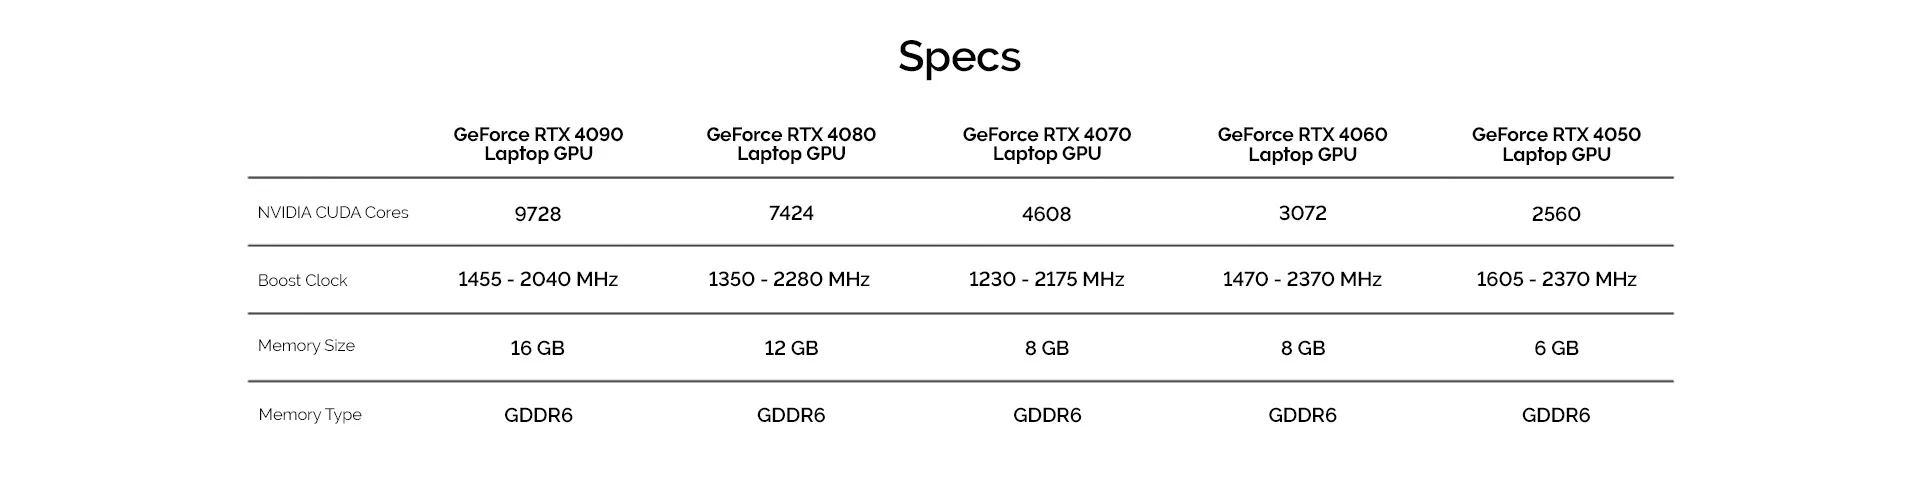 VM-Hero-NVIDIA-Geforce-SIS-Specs-1920x493.webp